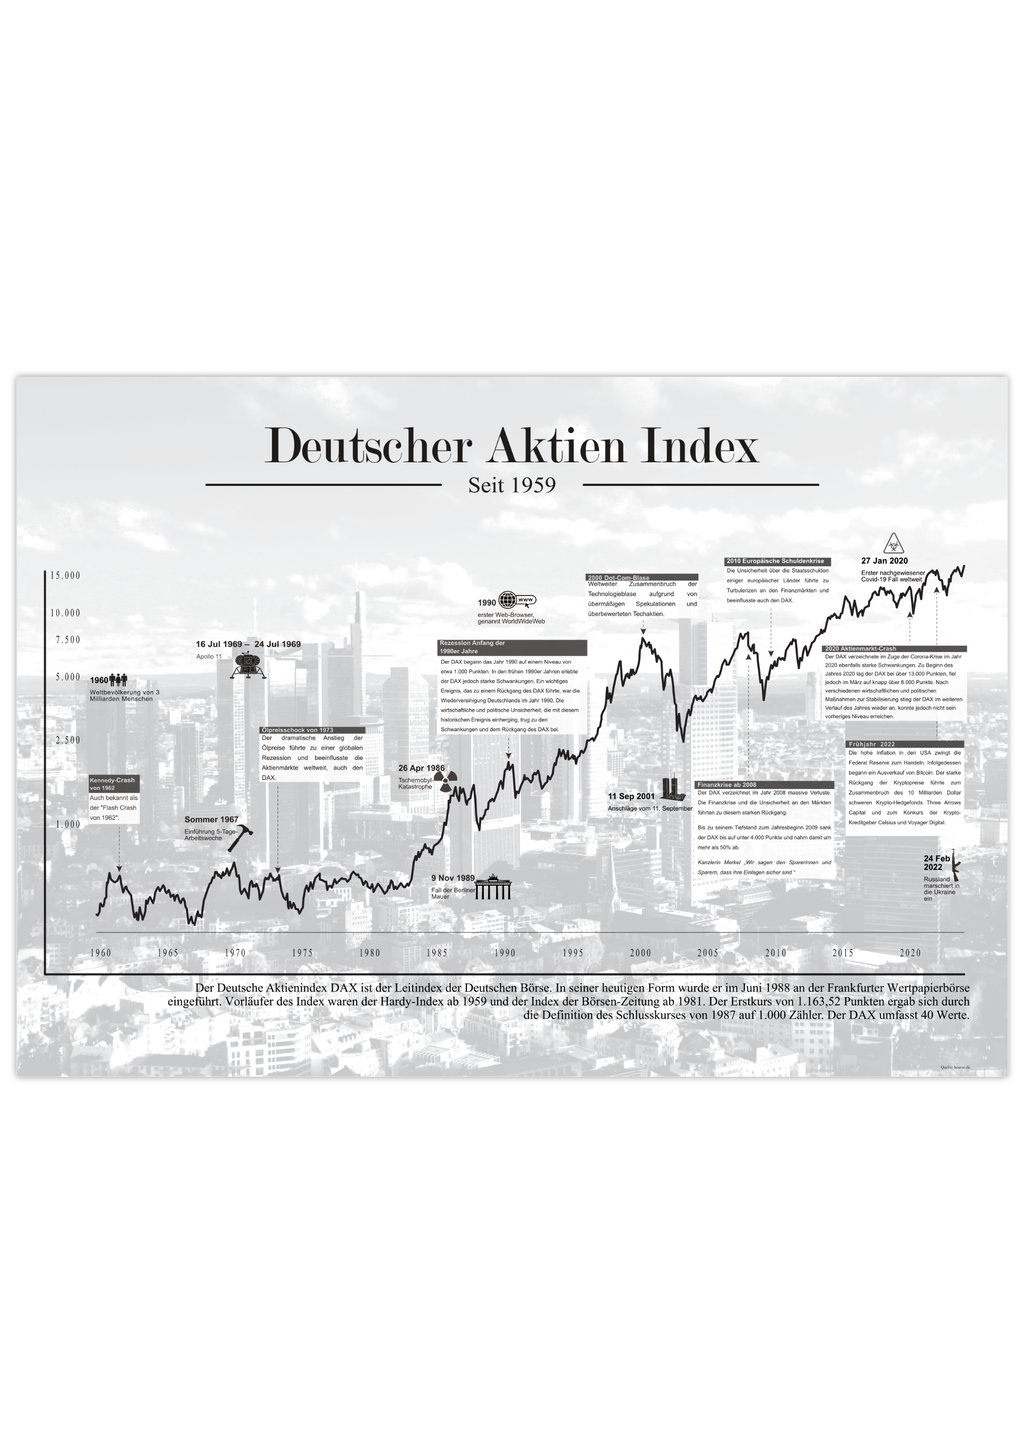 Dieses Aktienposter mit historischem Aktienchart zeigt den Deutschen Aktienindex seit 1959, inklusive historischer Daten.